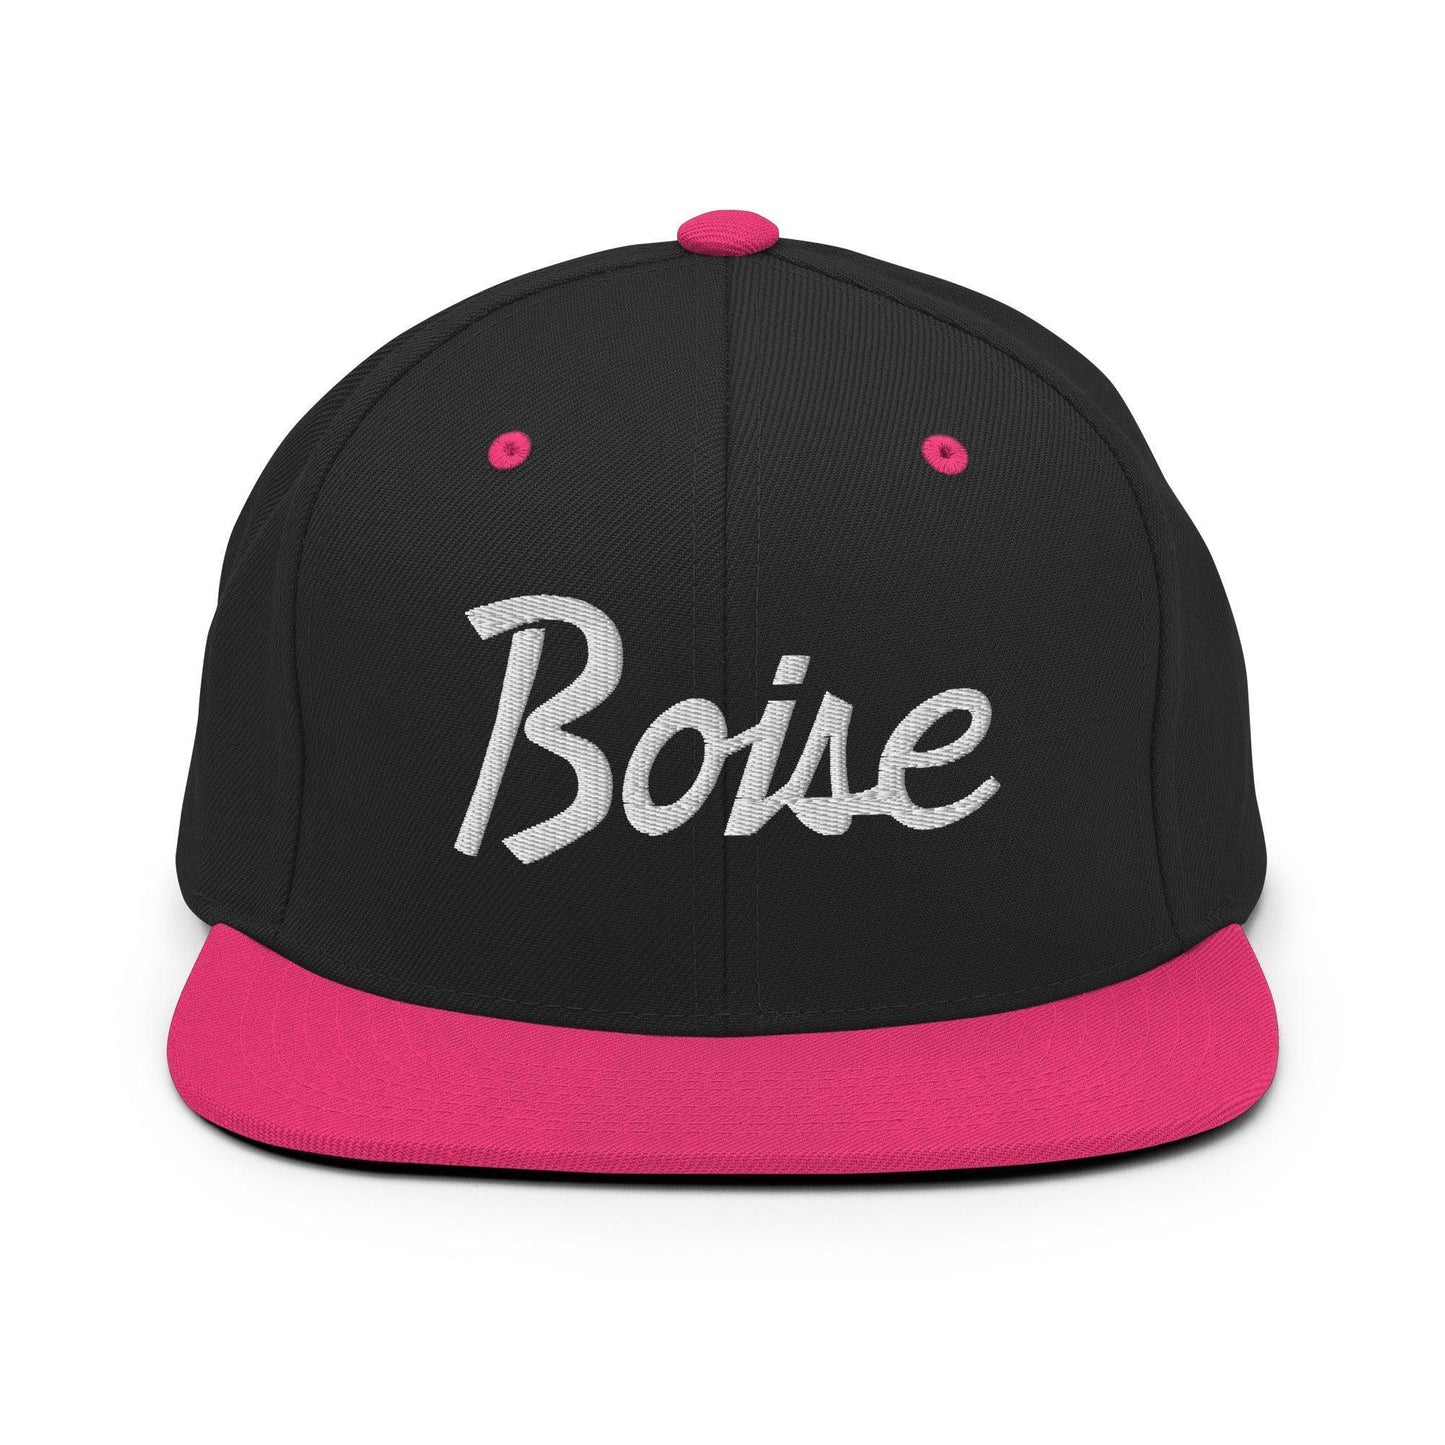 Boise Script Snapback Hat Black Neon Pink